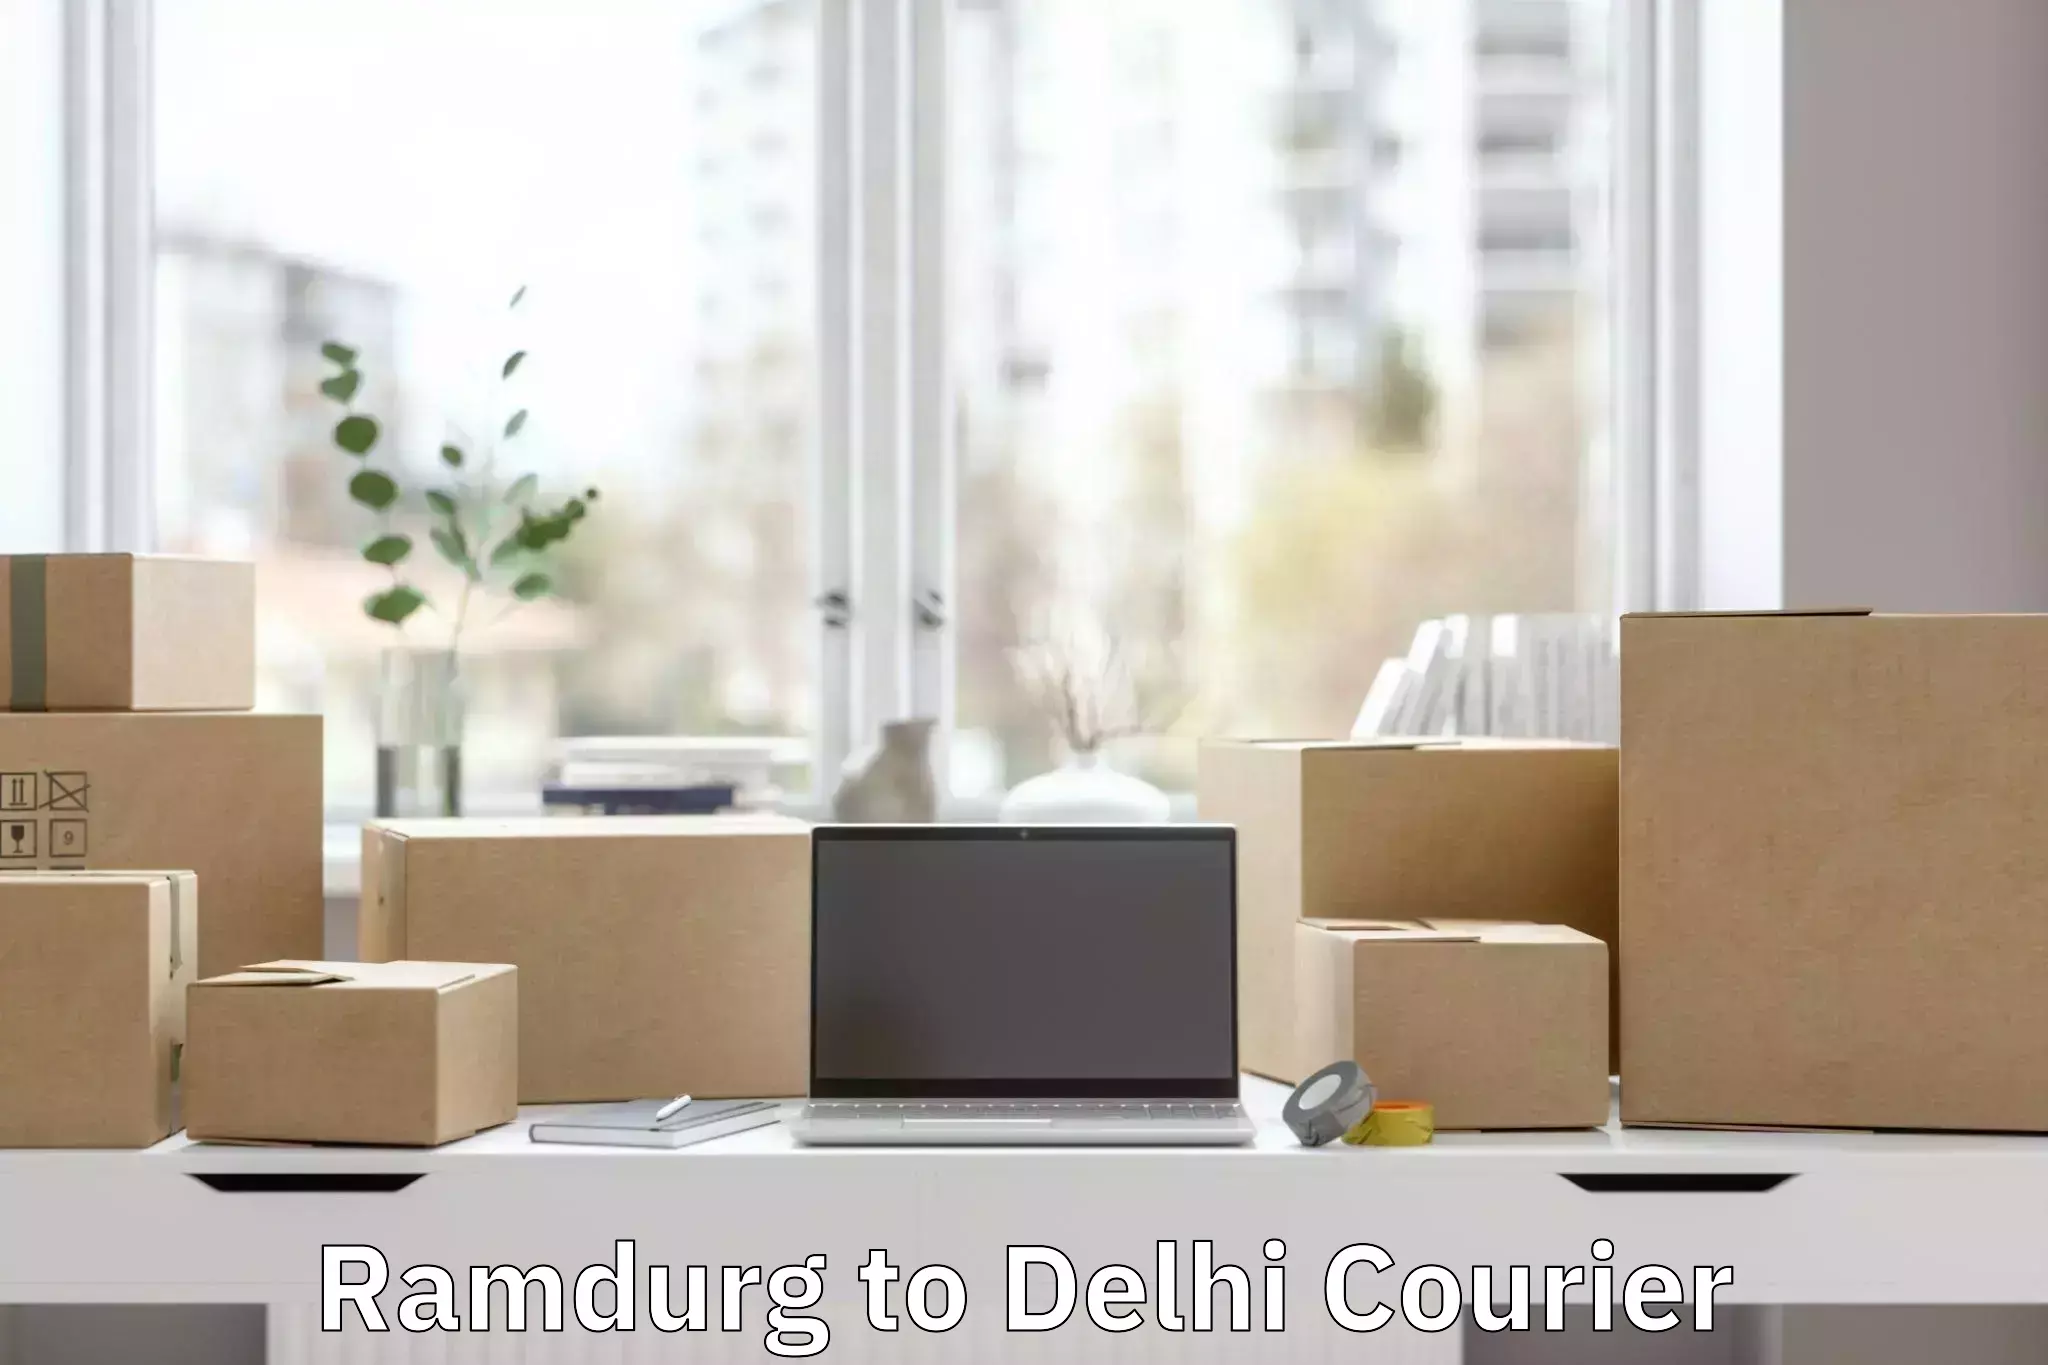 Door-to-door baggage service Ramdurg to NIT Delhi